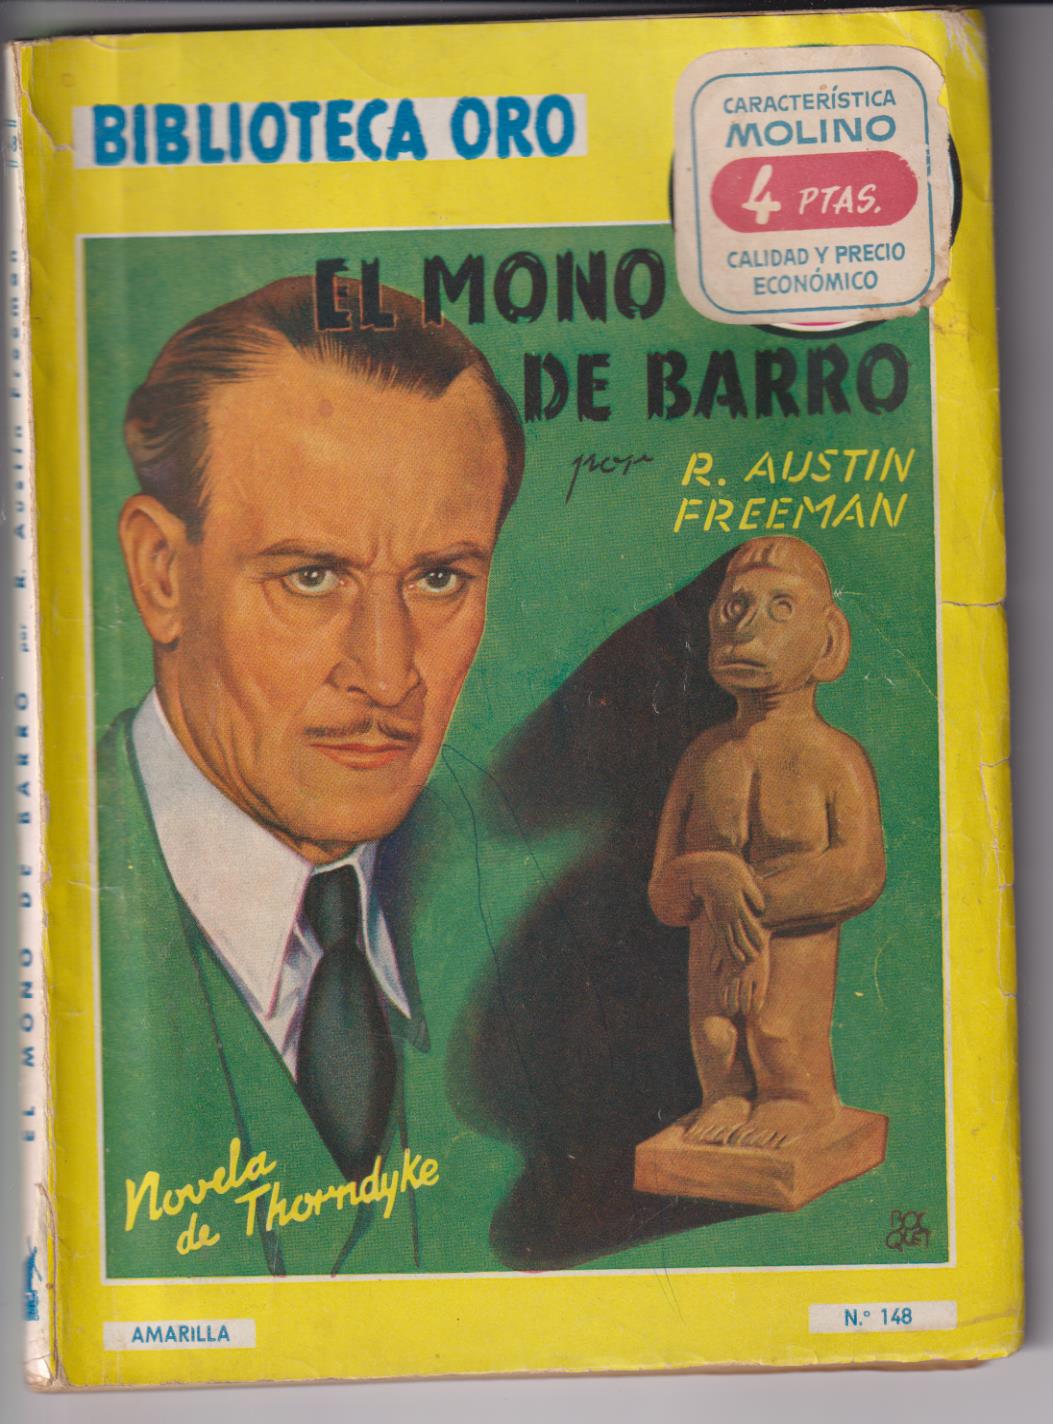 Biblioteca Oro nº 148. El mono de barro por R. Austin Freeman. Molino 1943